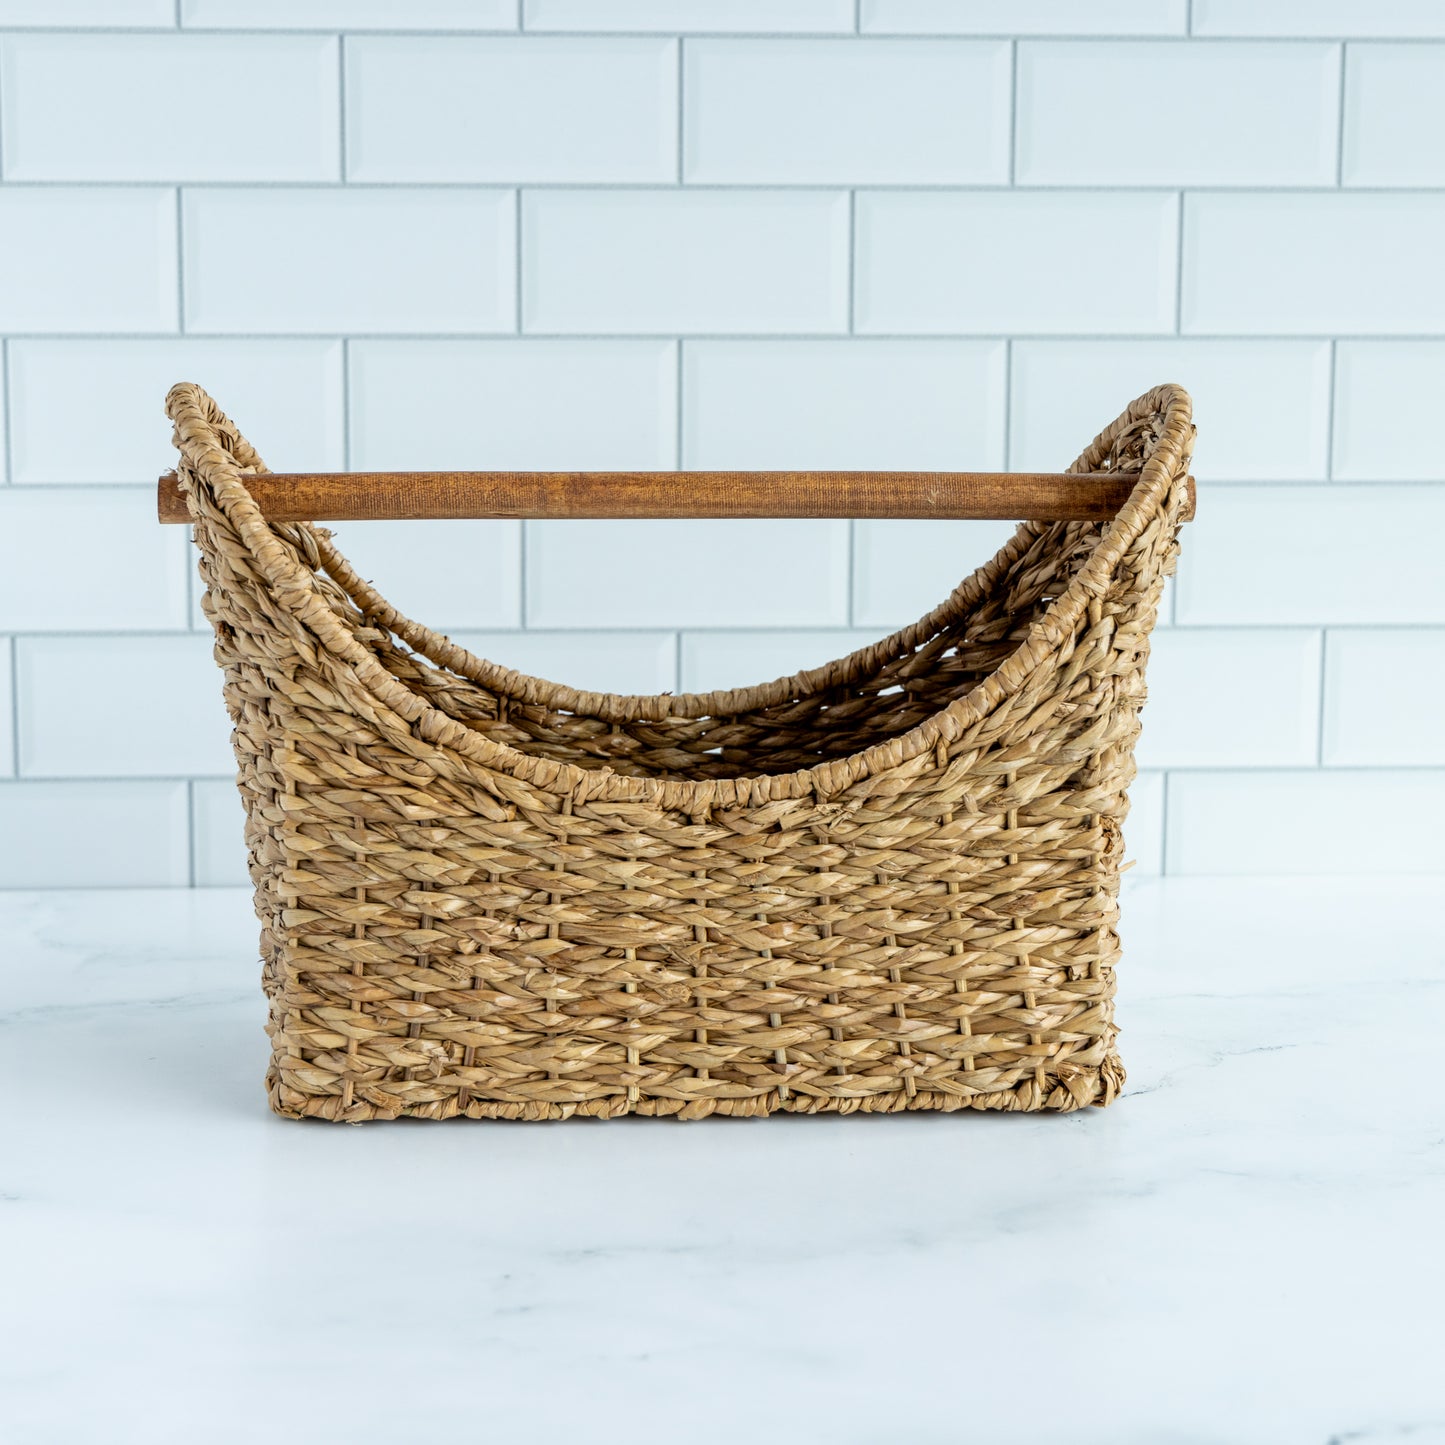 Hand-Woven Basket with Wood Handle